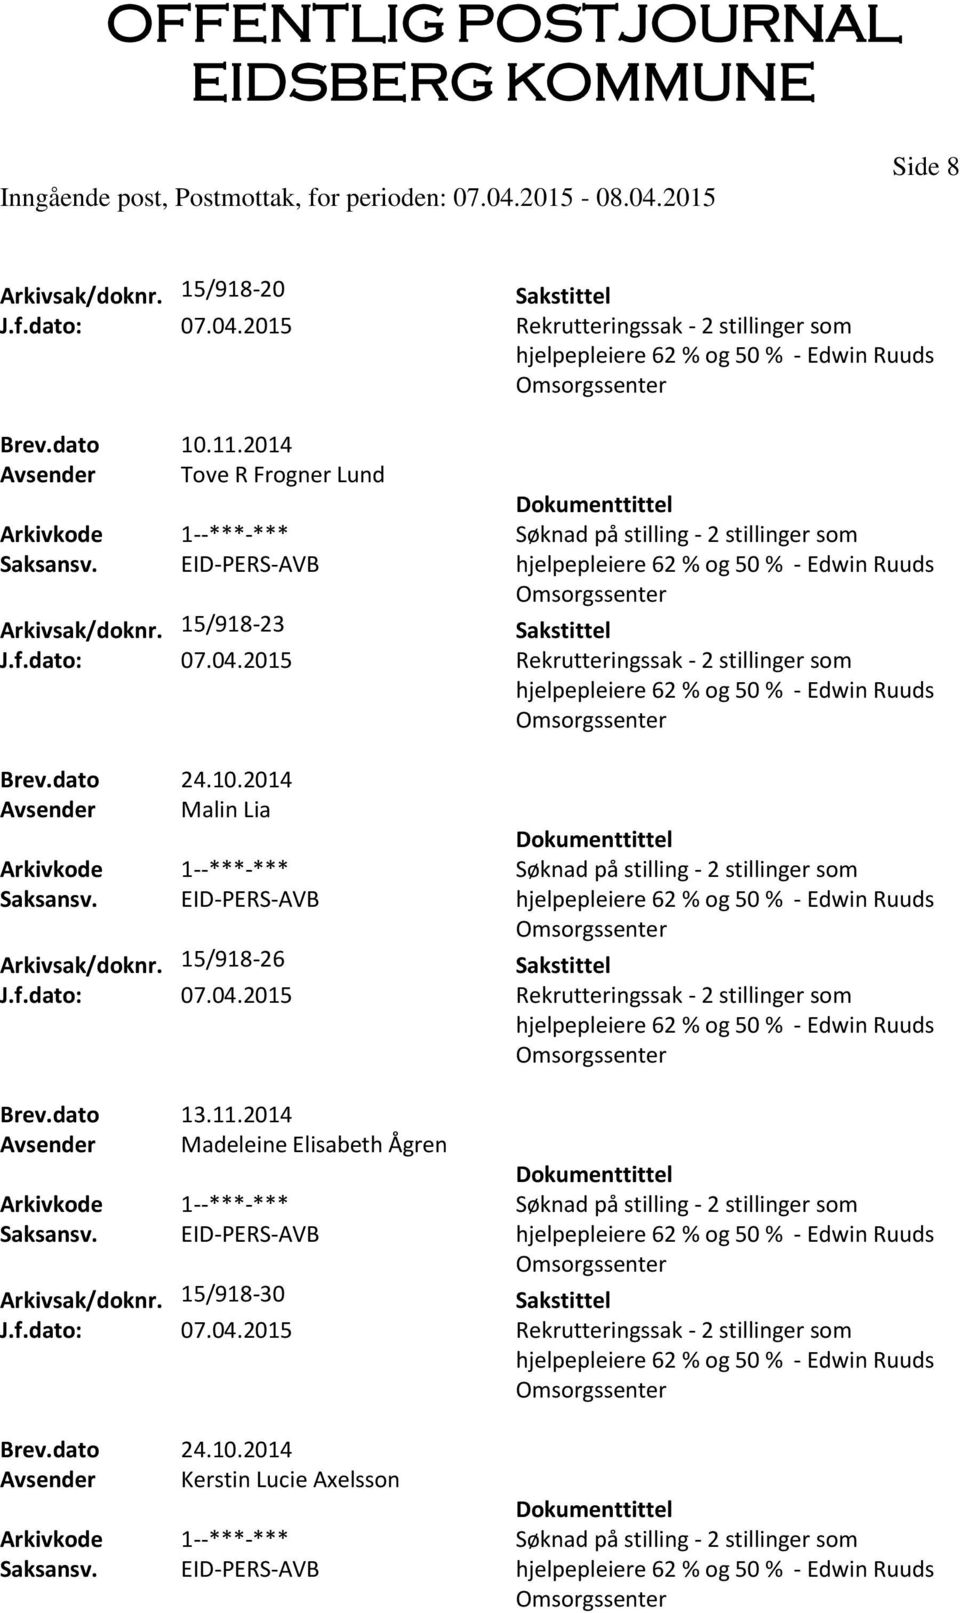 2014 Avsender Malin Lia 2 stillinger som Arkivsak/doknr. 15/918-26 2 stillinger som Brev.dato 13.11.